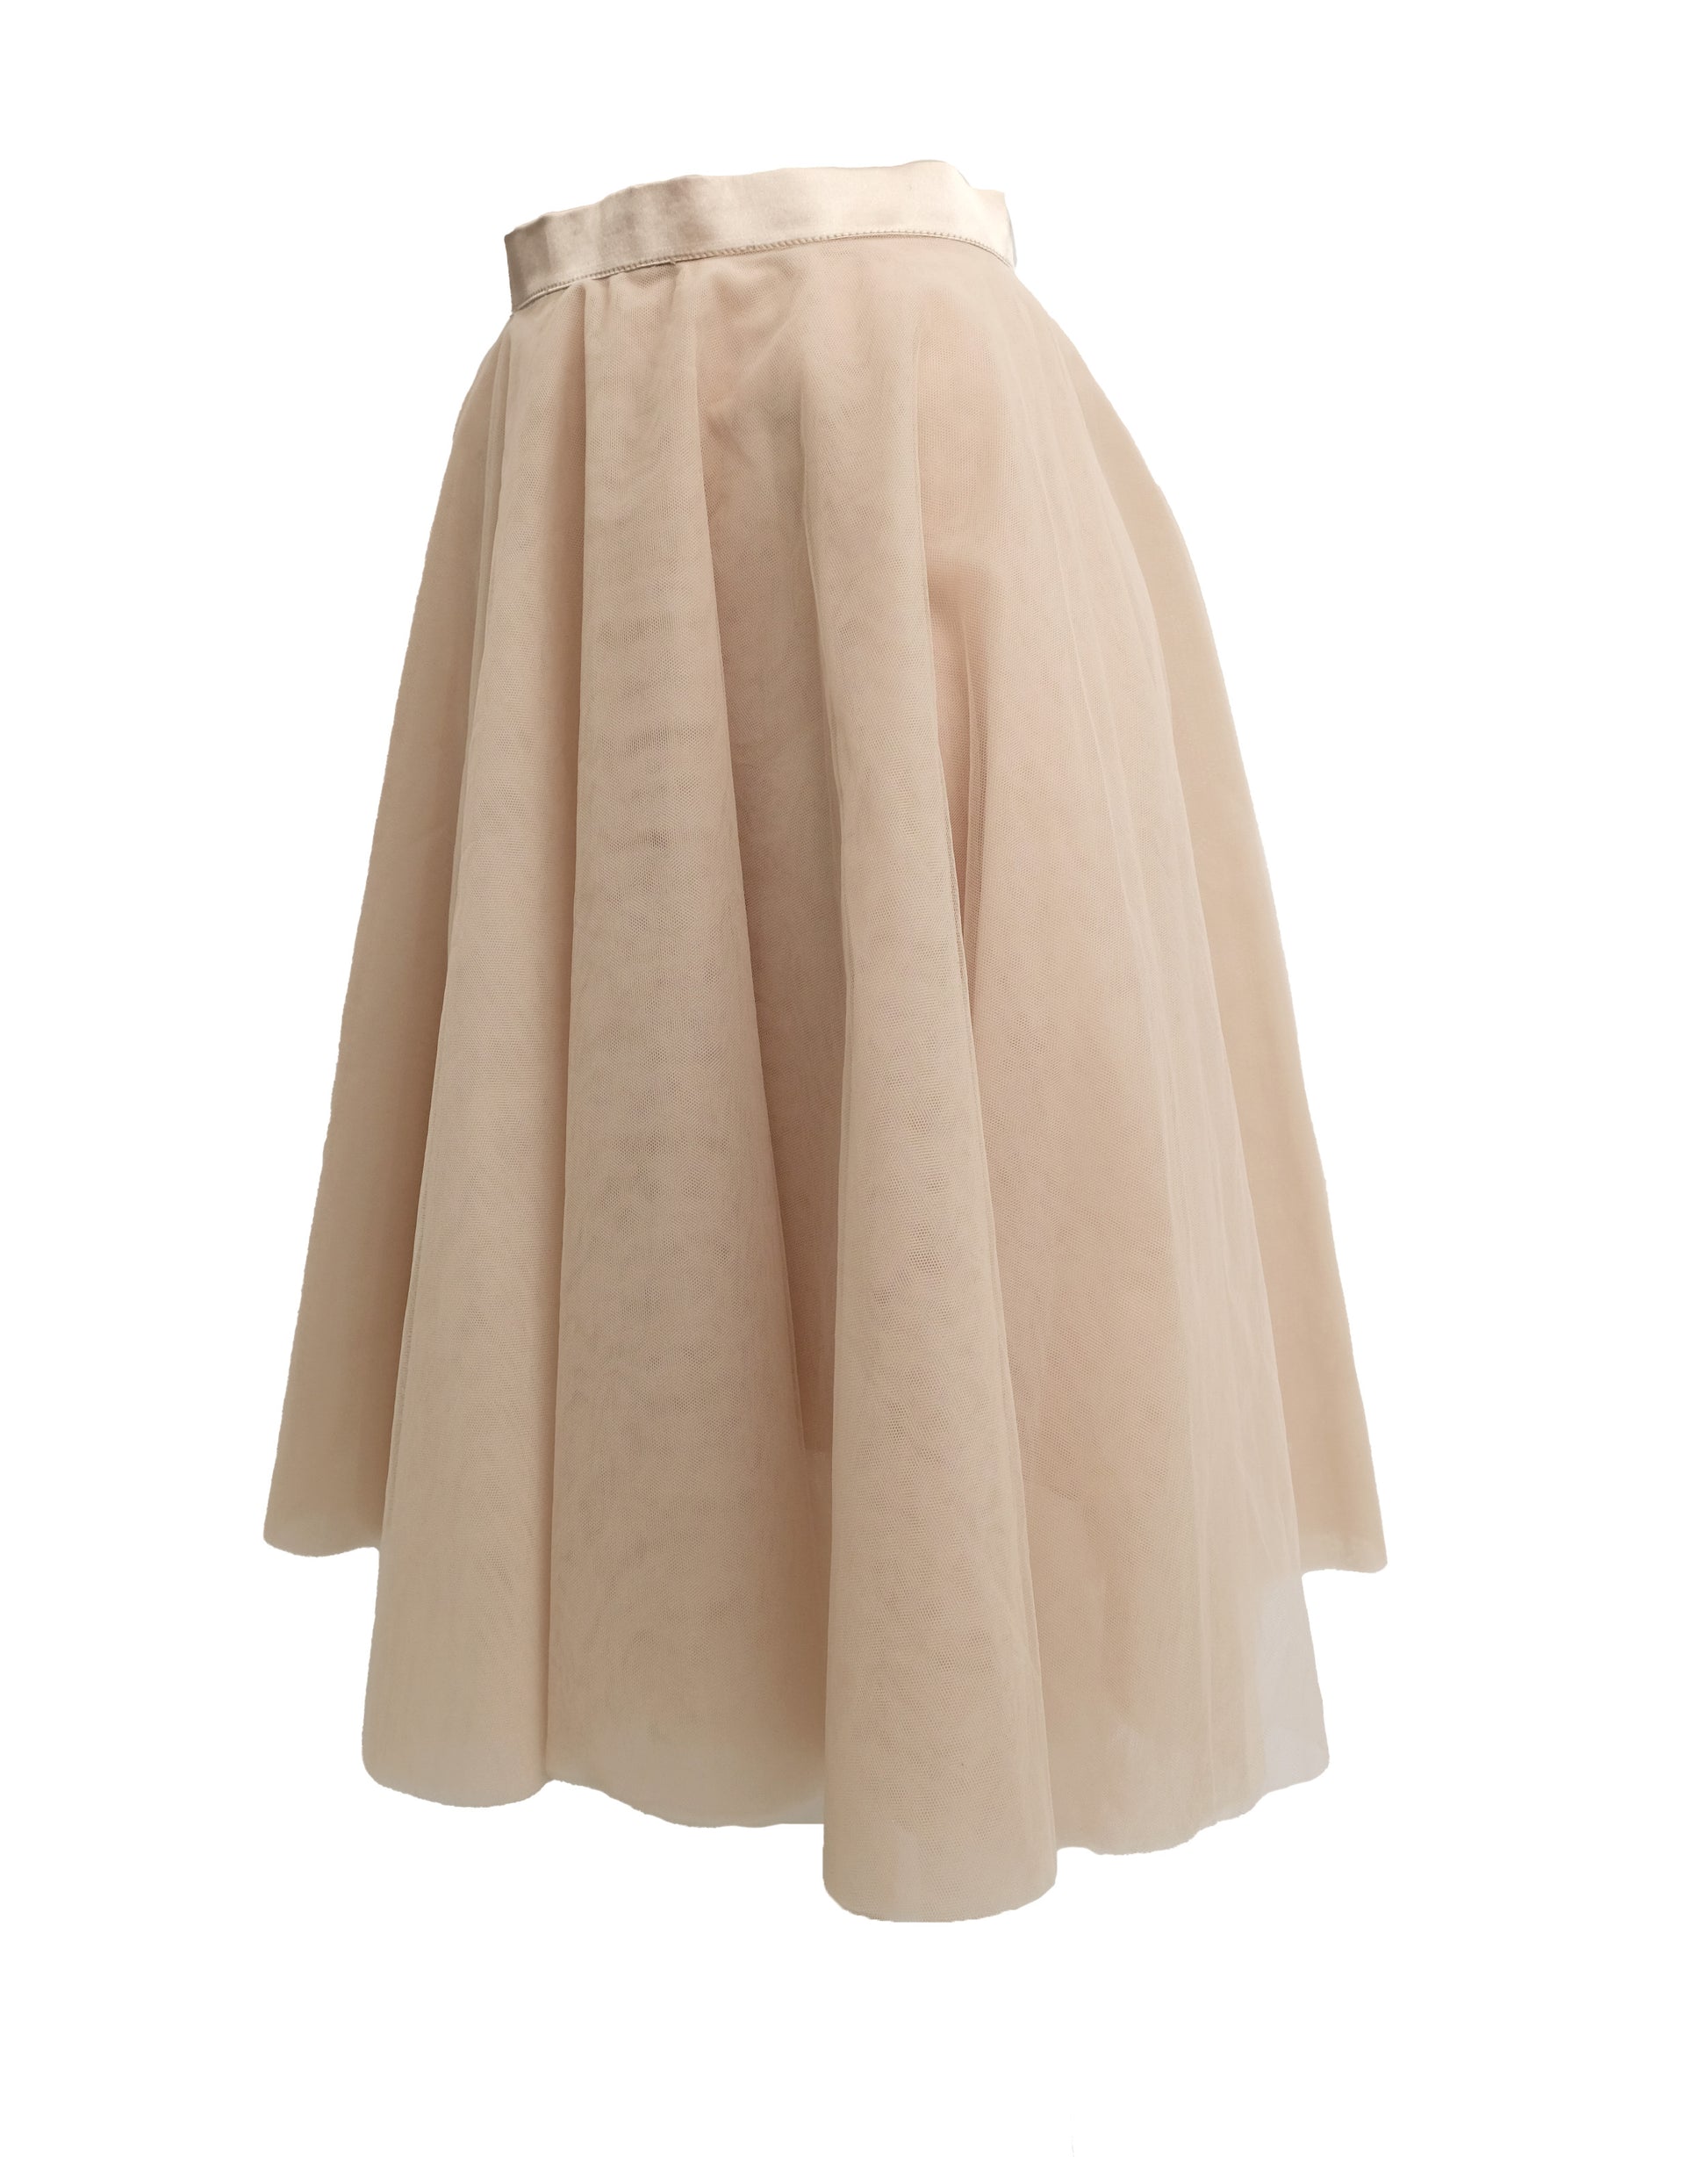 Ballerina Skirt in Pale Beige Tulle, UK10